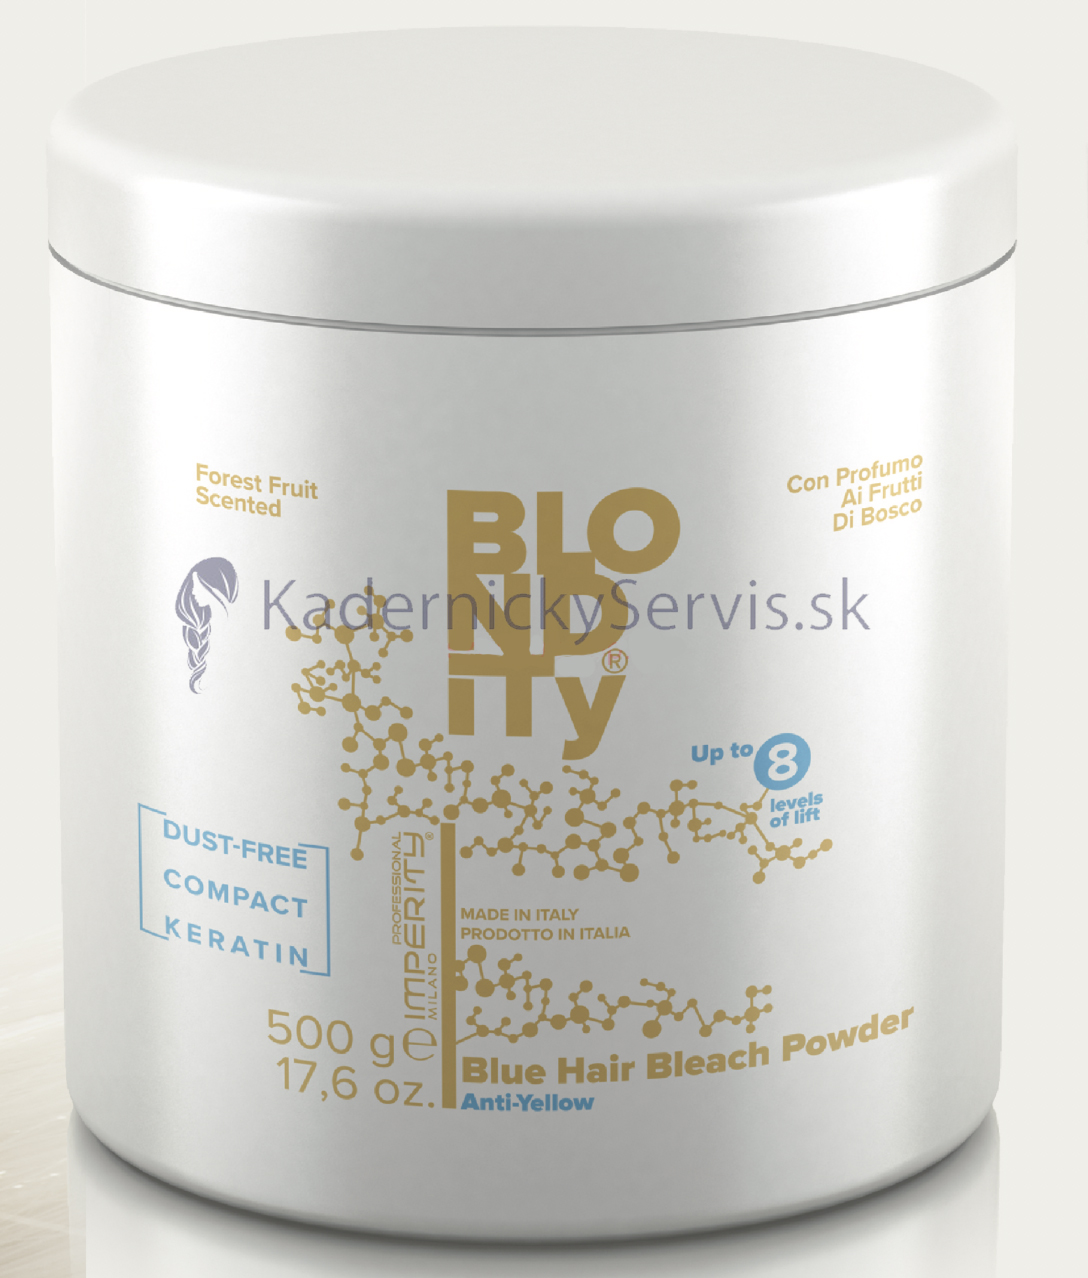 Imperity Blondity Blue Hair Bleach Powder Keratin Forest Fruit - modrý melírovací prášek s keratinem s vůní lesních plodů, 500 g